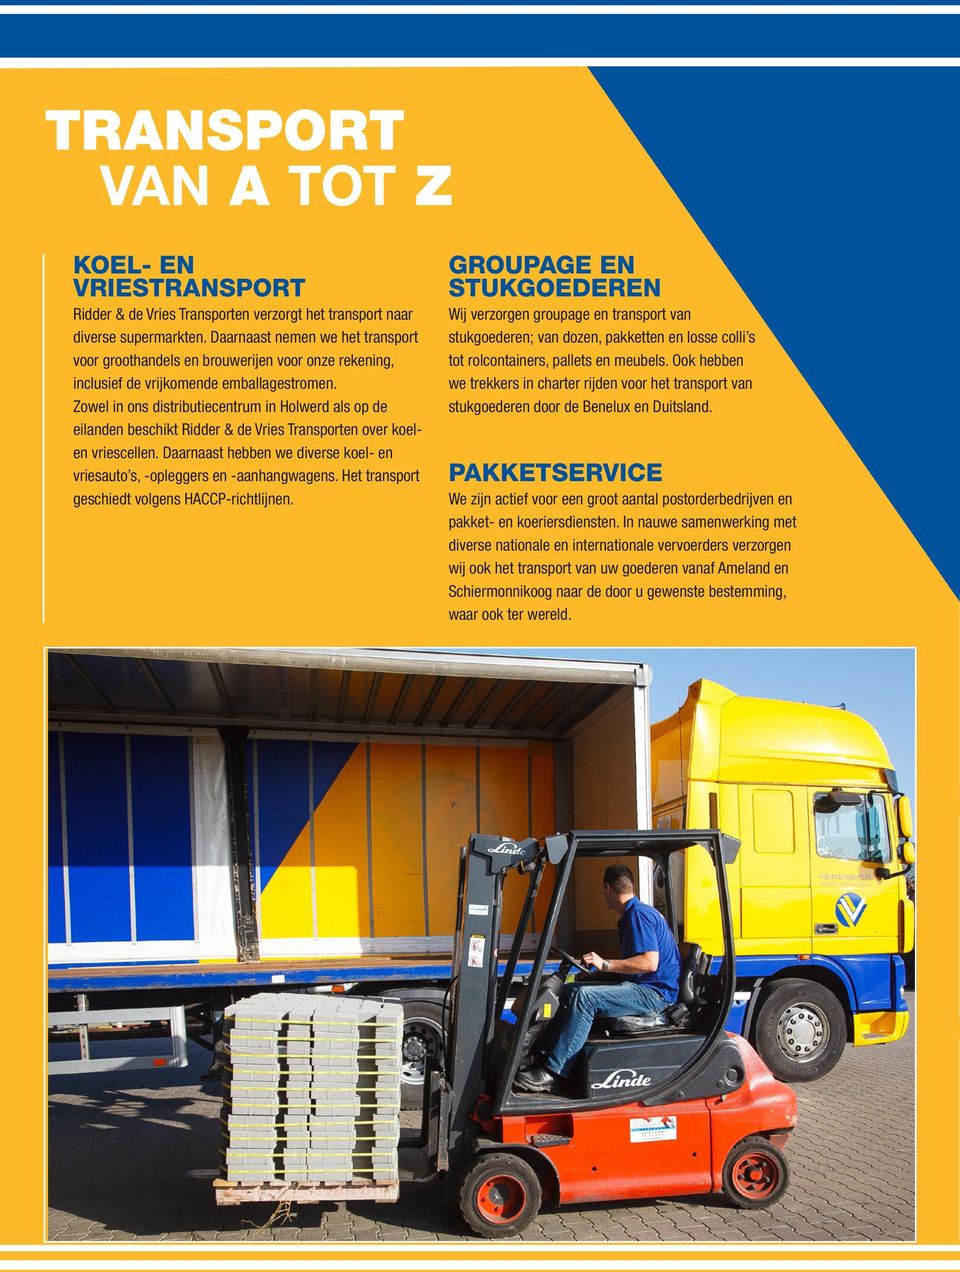 Zowel in ons distributiecentrum in Holwerd als op de eilanden beschikt Ridder & de Vries Transporten over koelen vriescellen.